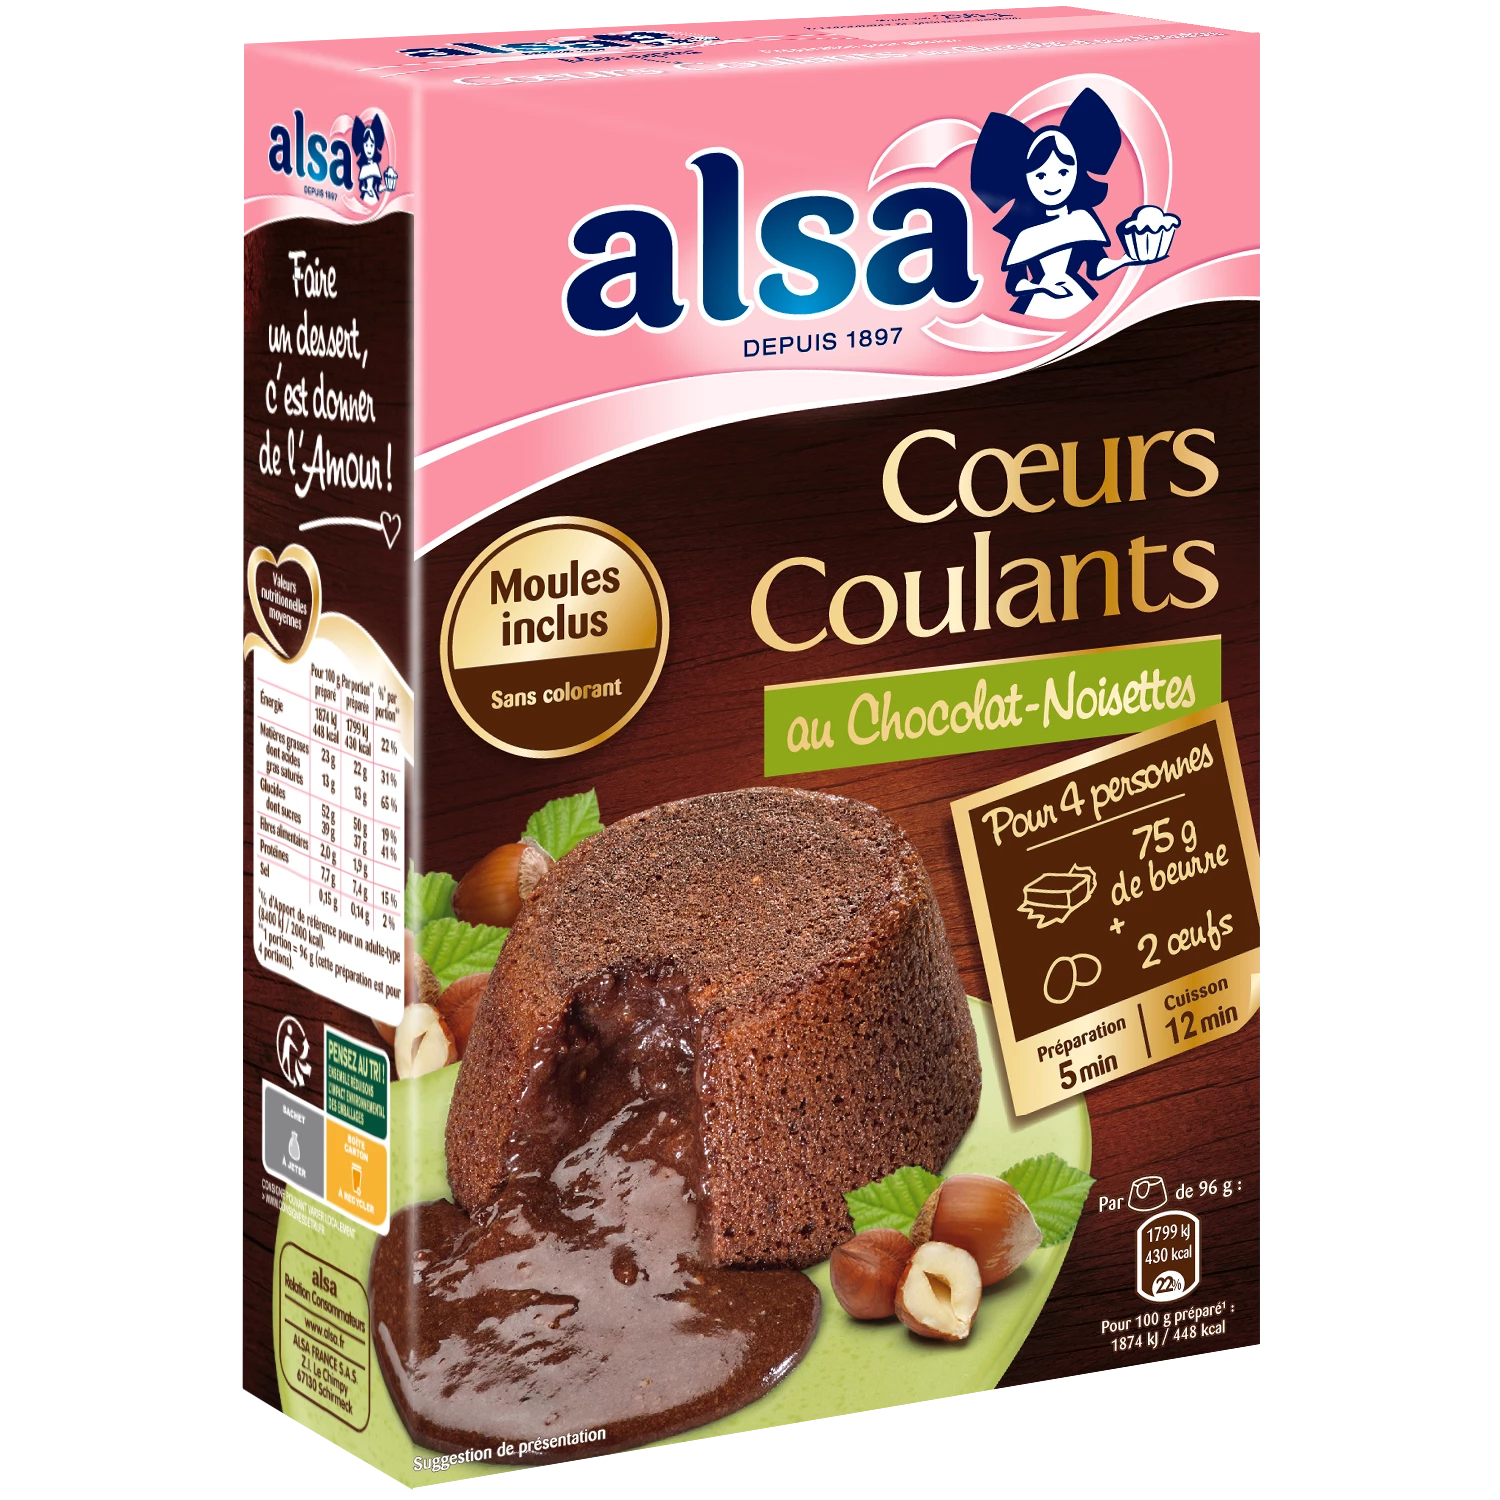 Chocolate hazelnut flowing heart preparation 250g - ALSA